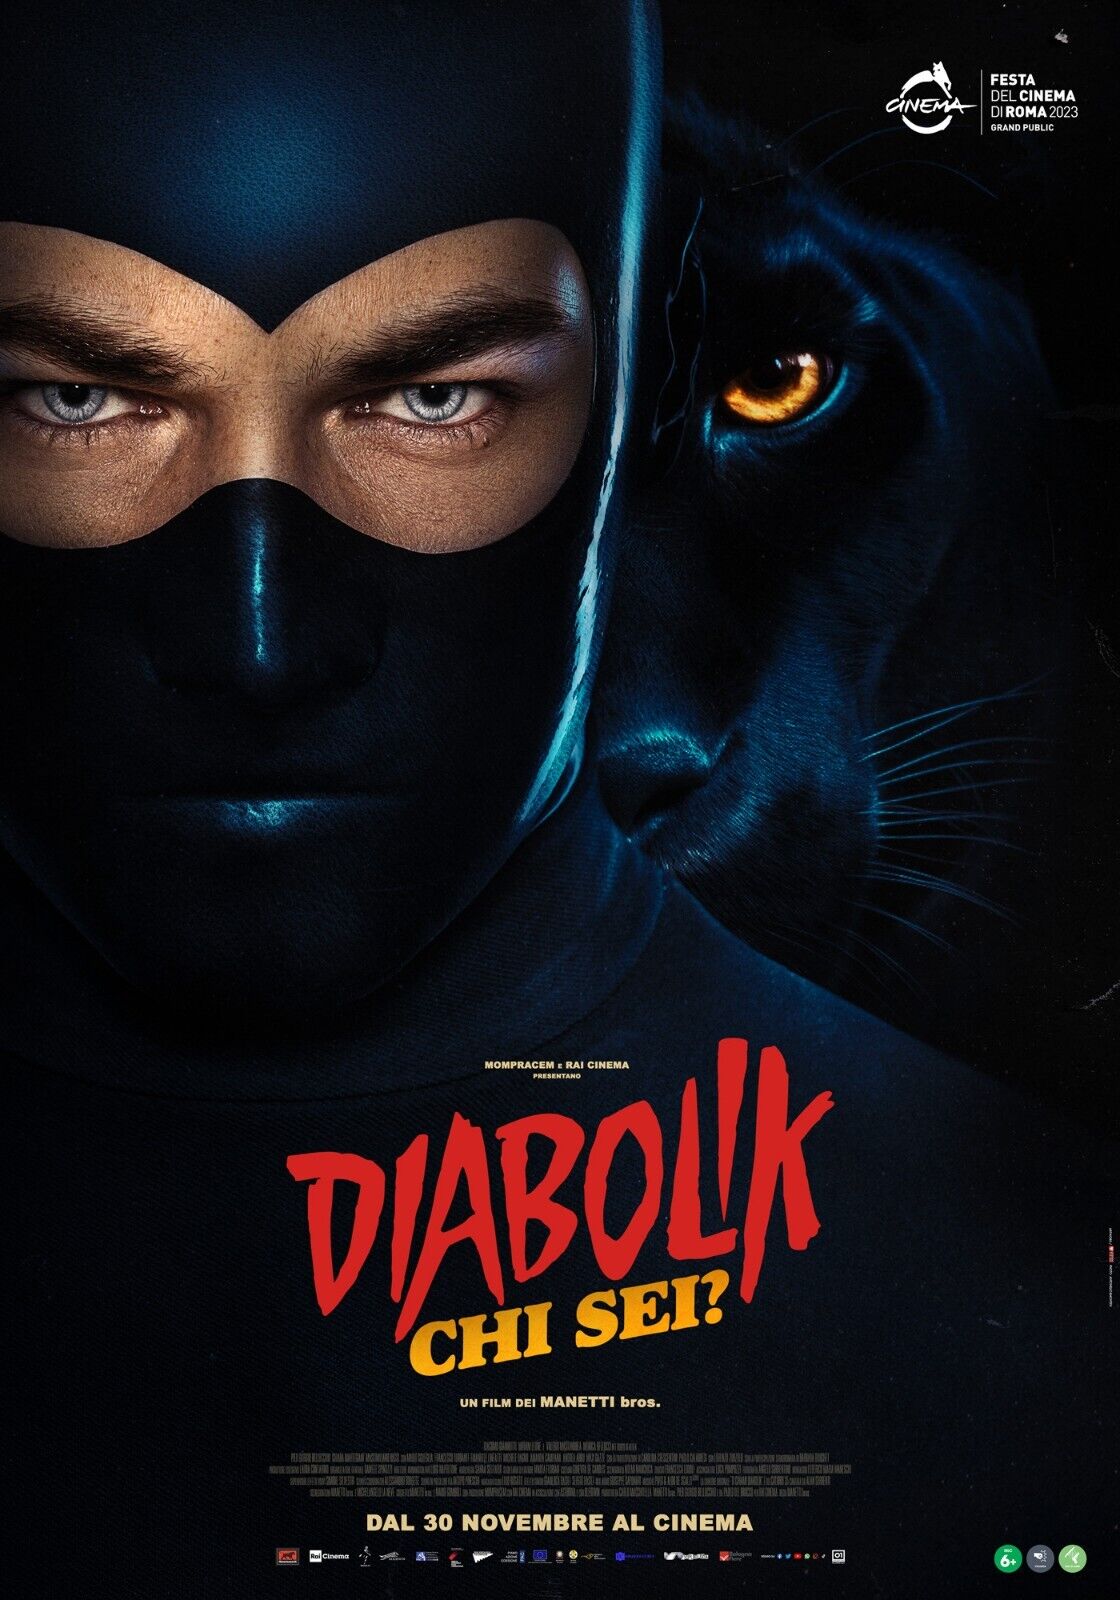 I Calibro 35 nella soundtrack di “Diabolik chi sei?”